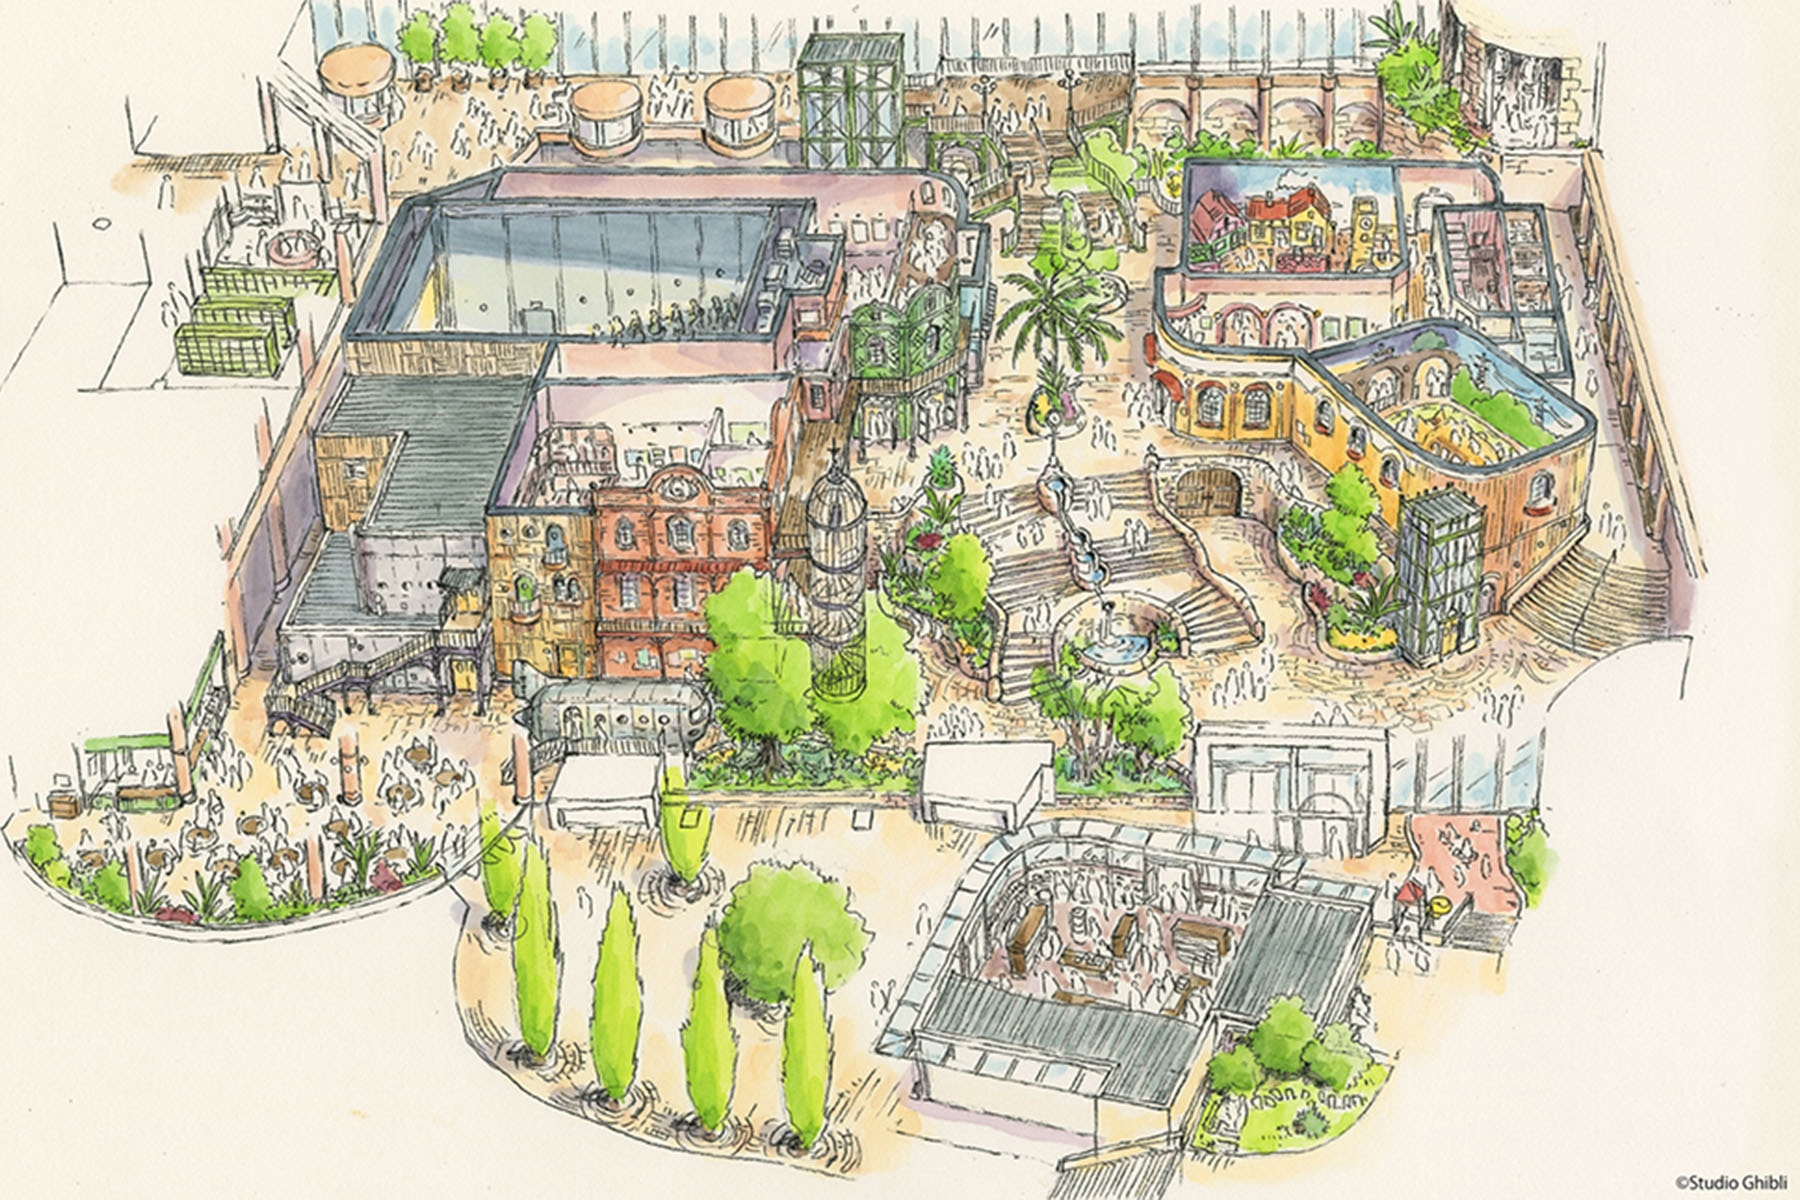 Studio Ghibli 吉卜力工作室主題公園開幕日期正式公佈